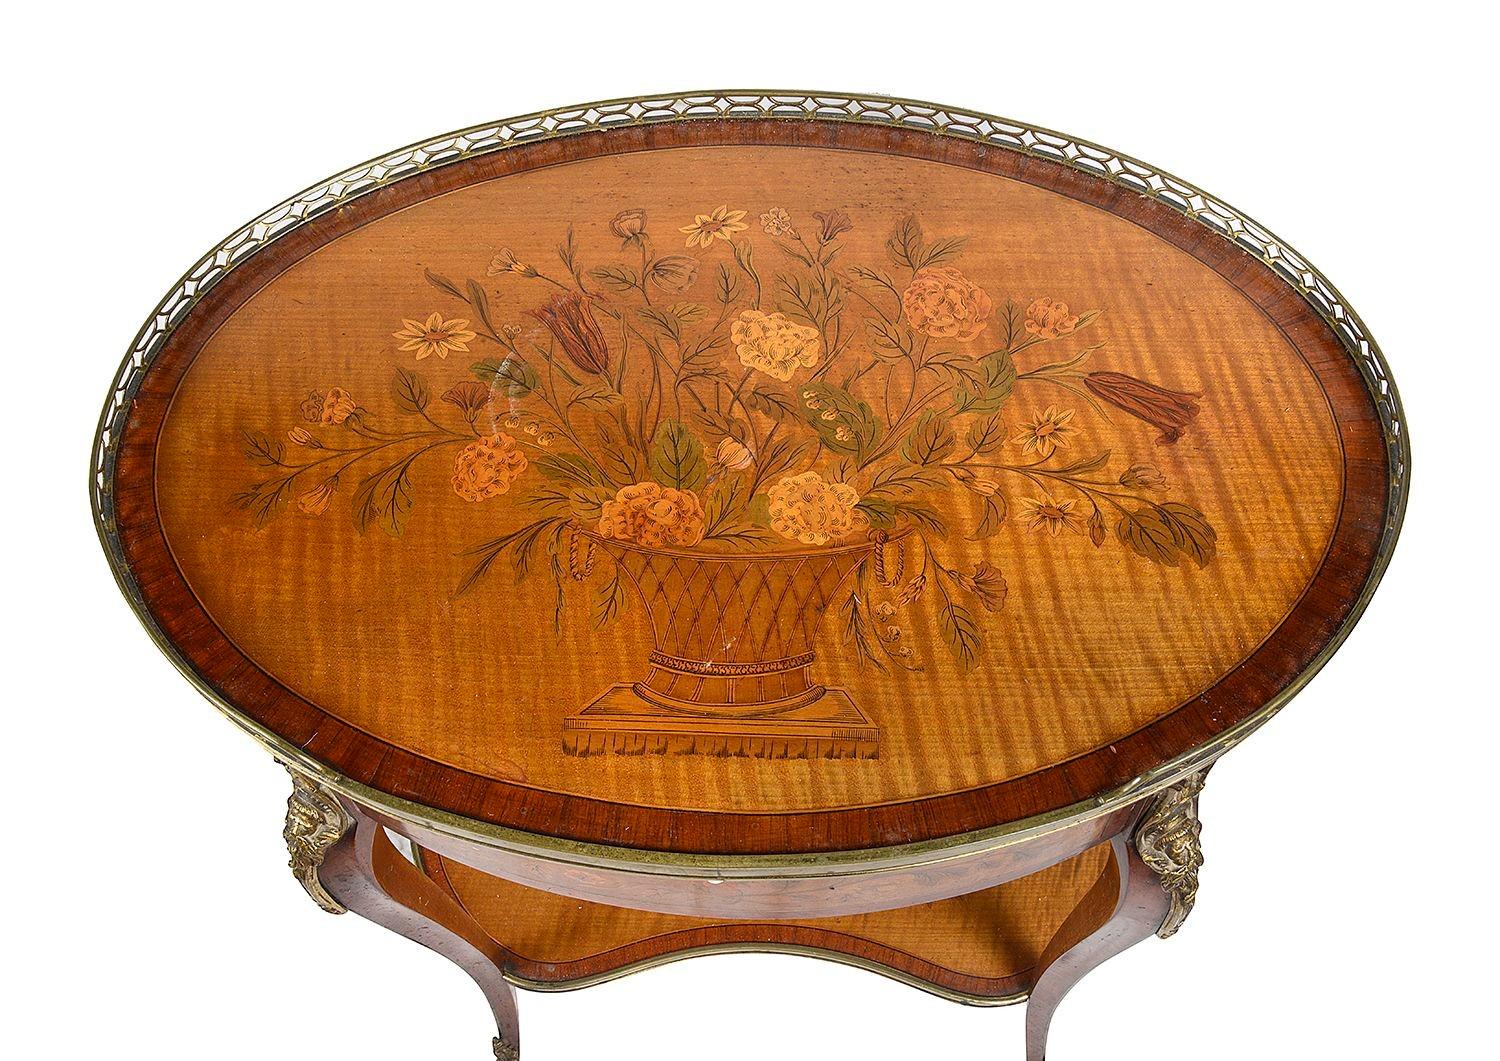 Eine sehr gute Qualität späten 19. Jahrhundert Französisch Intarsien ovalen Beistelltisch. Auf der Oberseite befindet sich ein wunderschön eingelegter Blumenkorb, eine durchbrochene Galerie aus Messing, eine Kerzenrutsche und eine einzelne Schublade